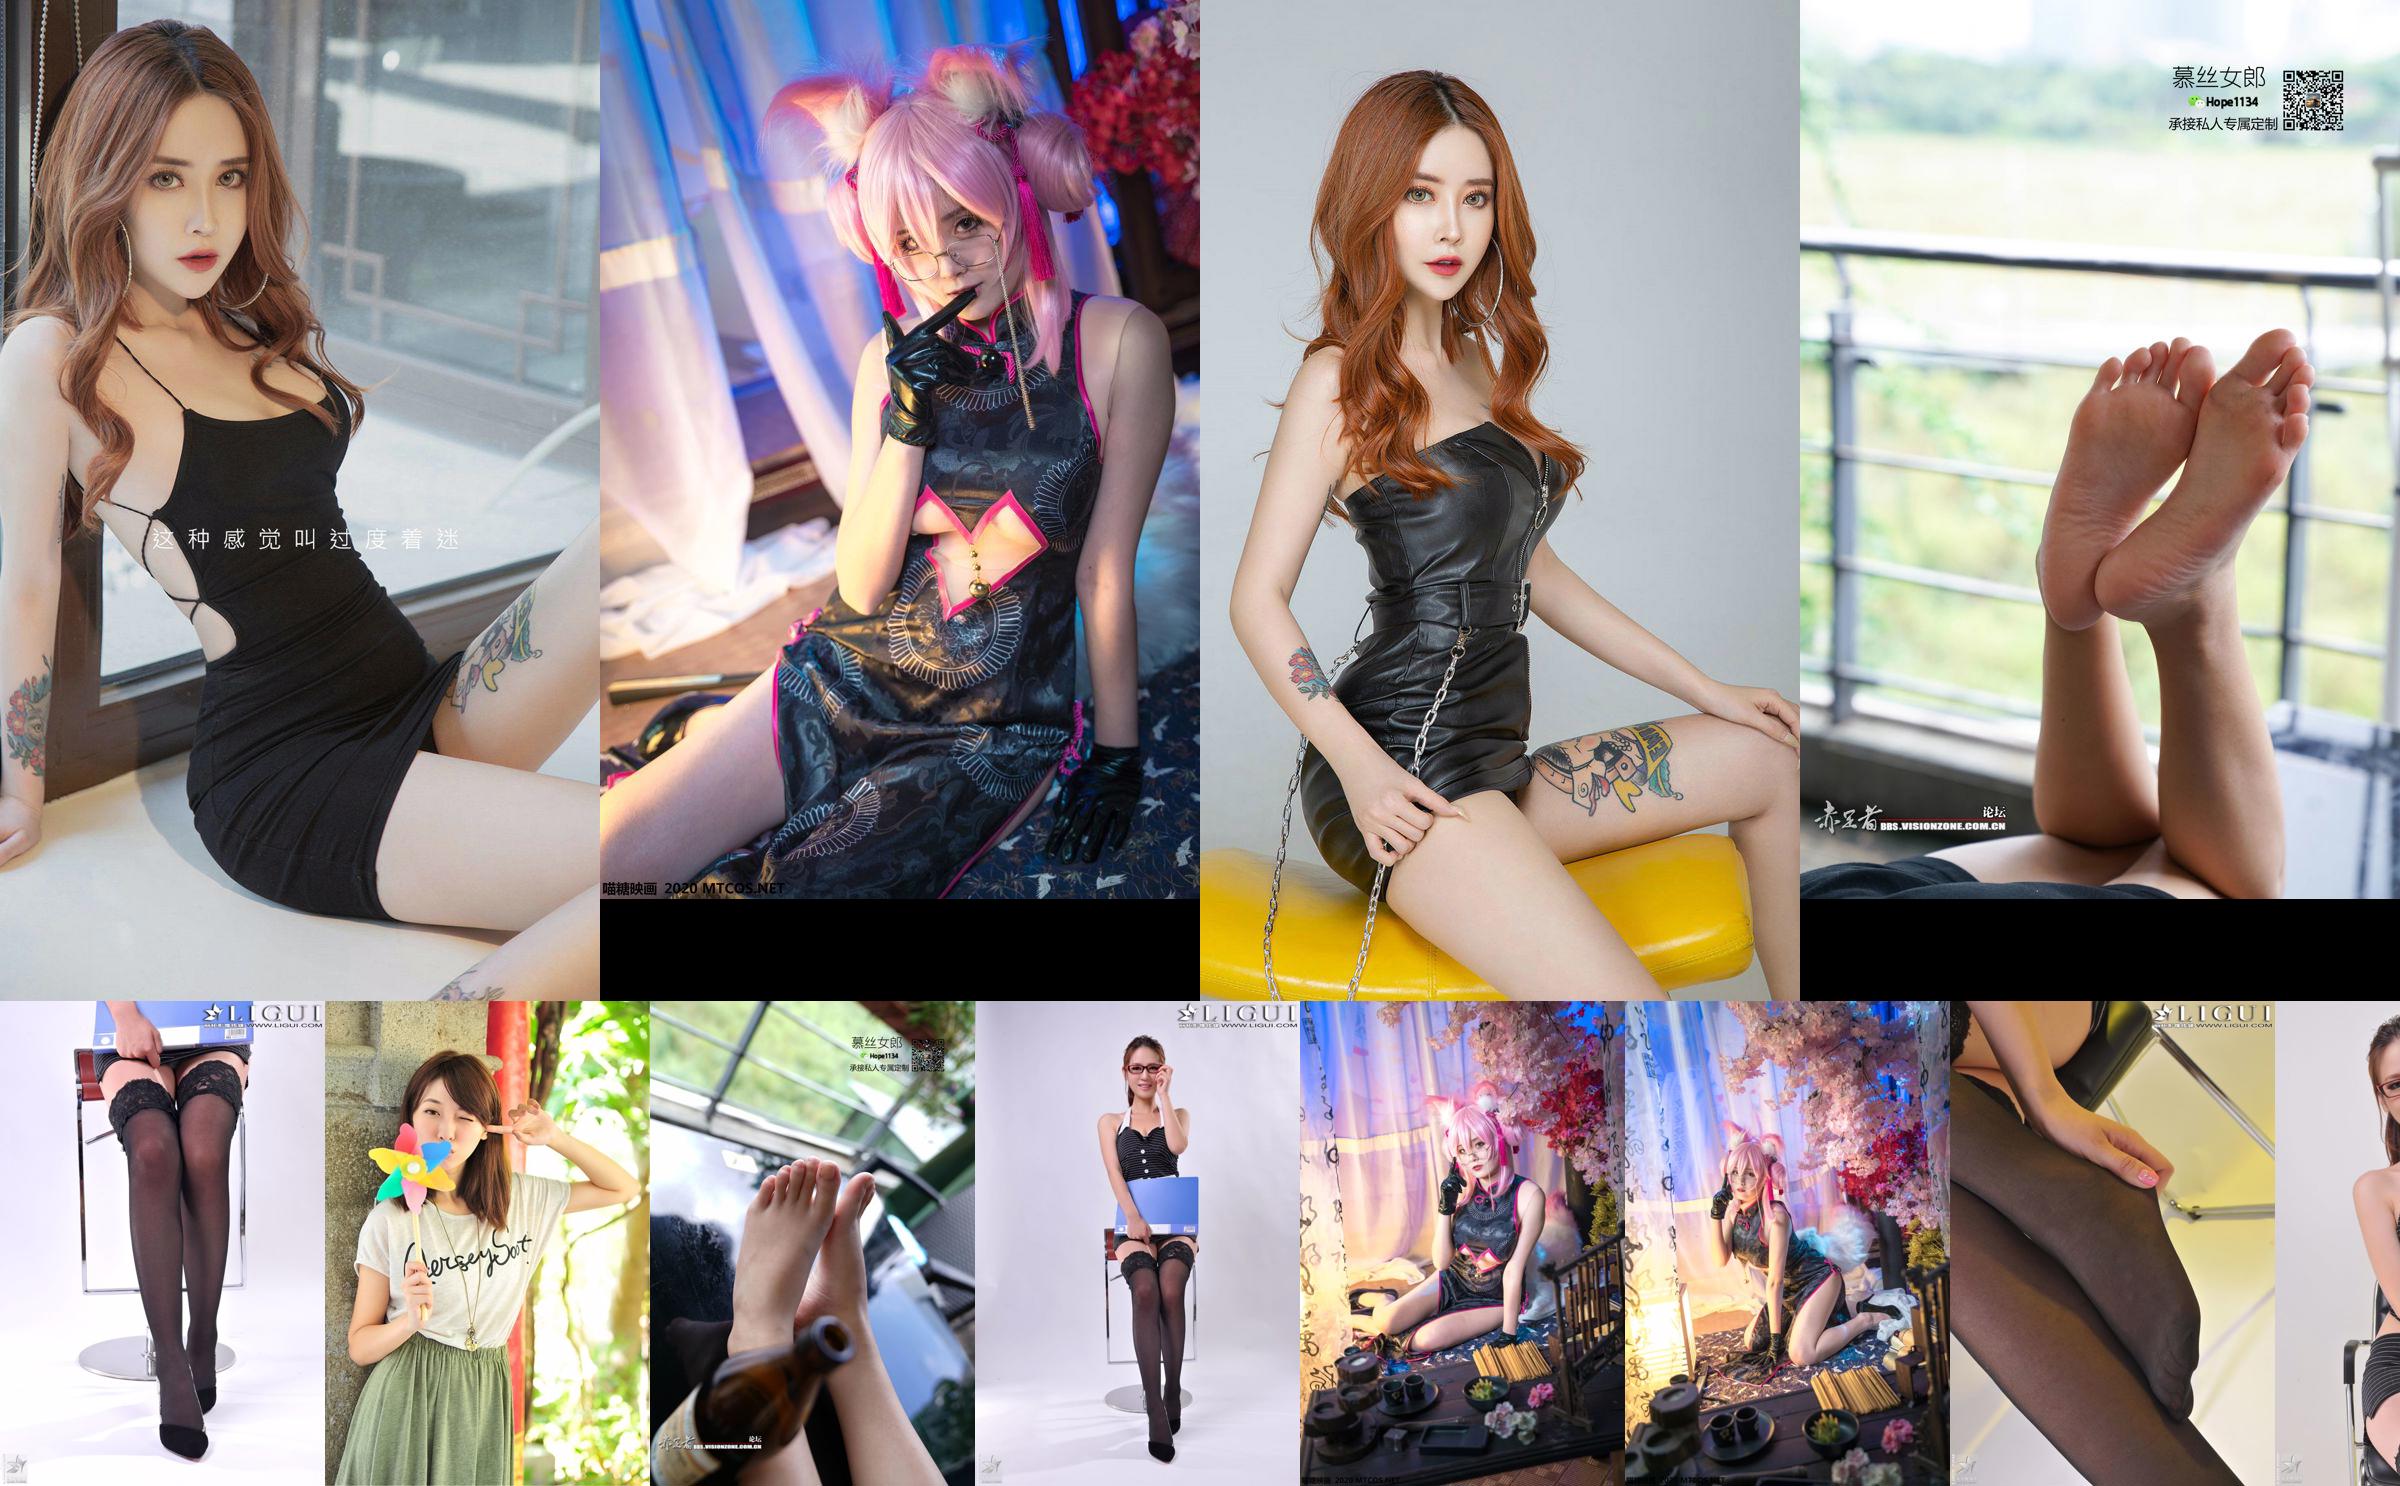 [丽 柜 贵 足 LiGui] Tác phẩm hoàn chỉnh "Cô gái đeo kính chuyên nghiệp" của người mẫu Xiaoyu No.b8c779 Trang 5